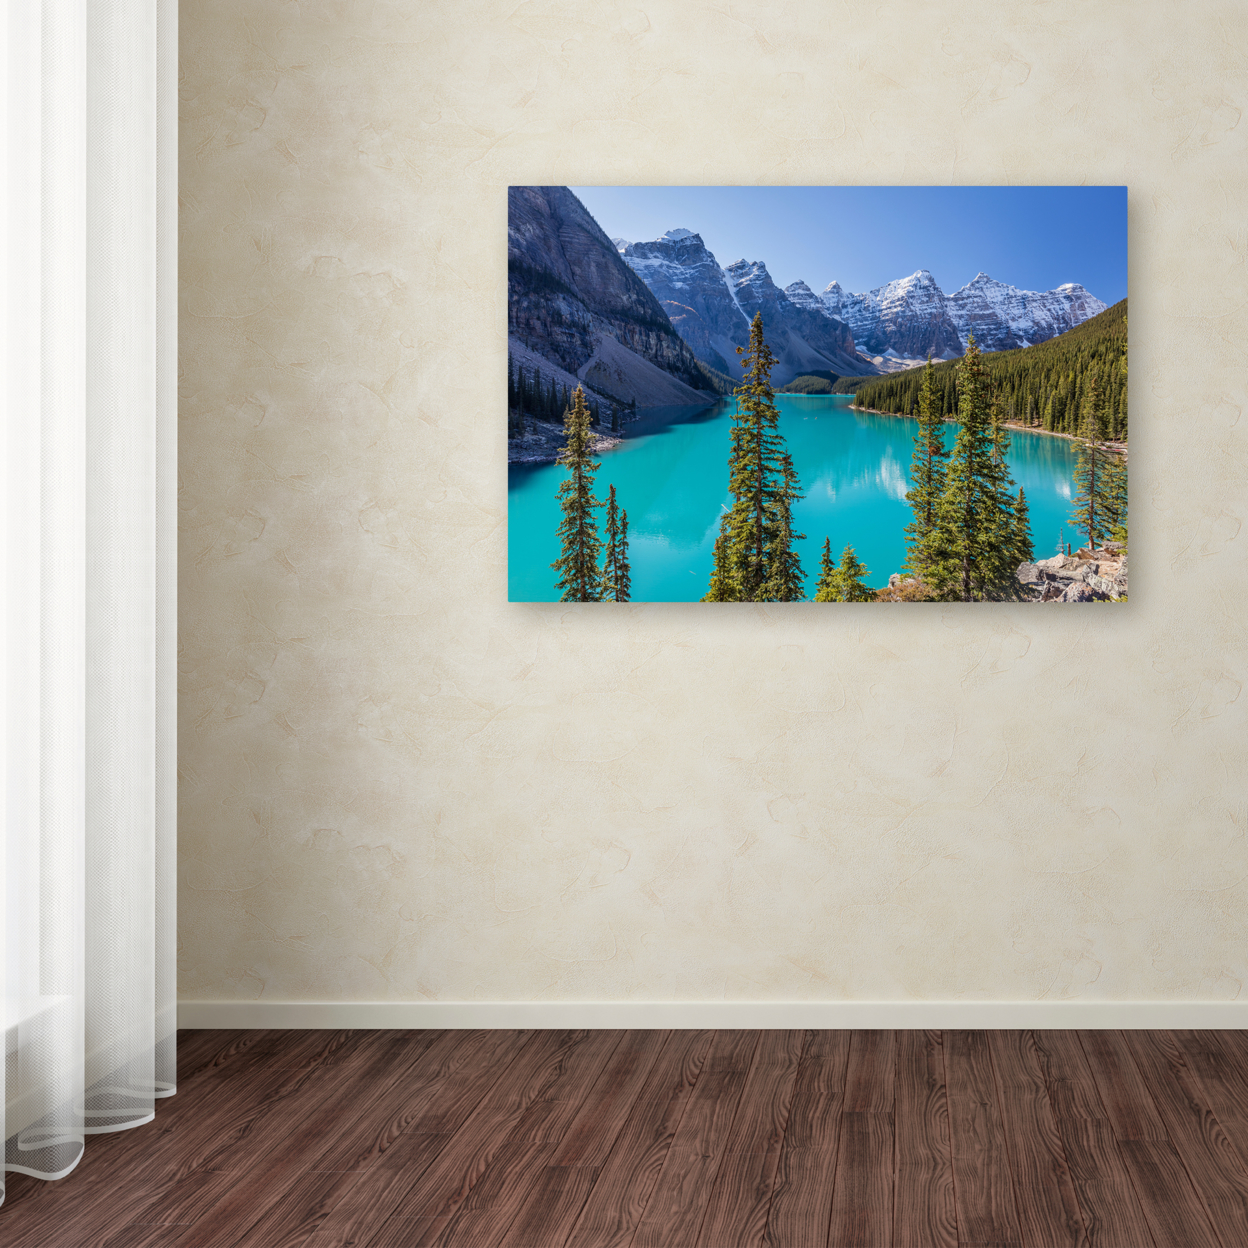 Pierre Leclerc 'Turquoise Moraine Lake' Canvas Art 16 X 24